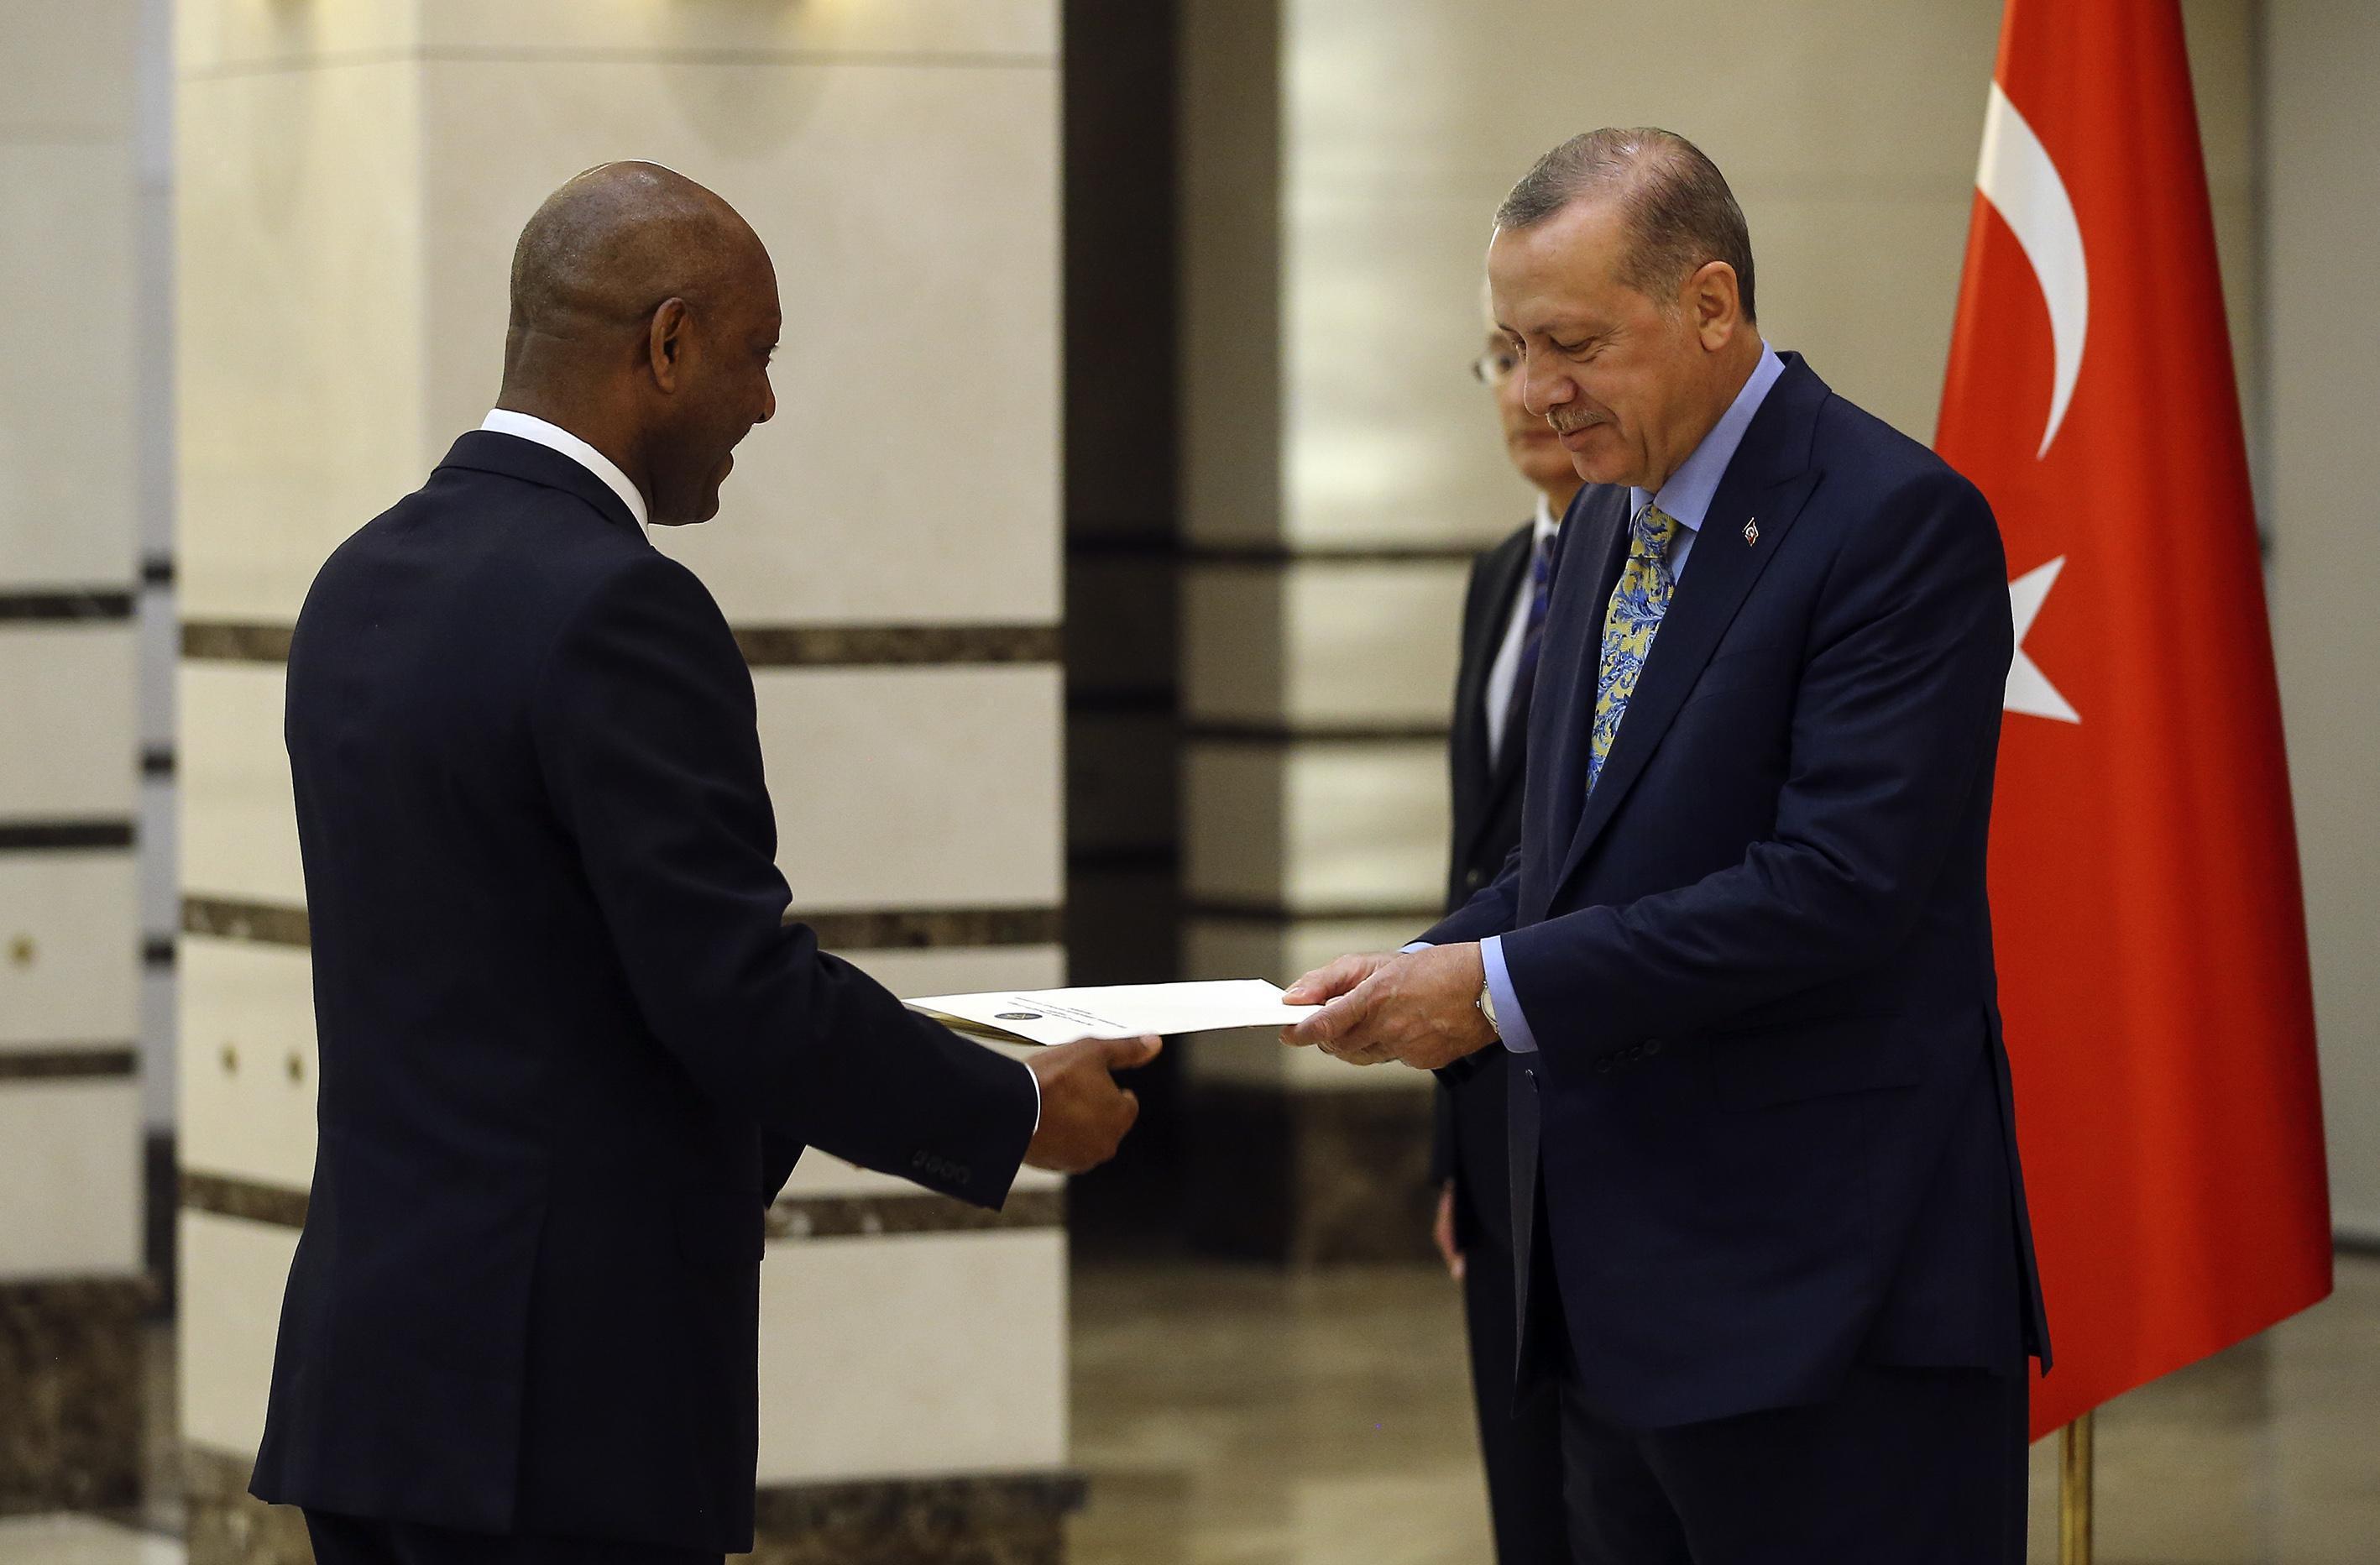 Büyükelçilerden Cumhurbaşkanı Erdoğana güven mektubu